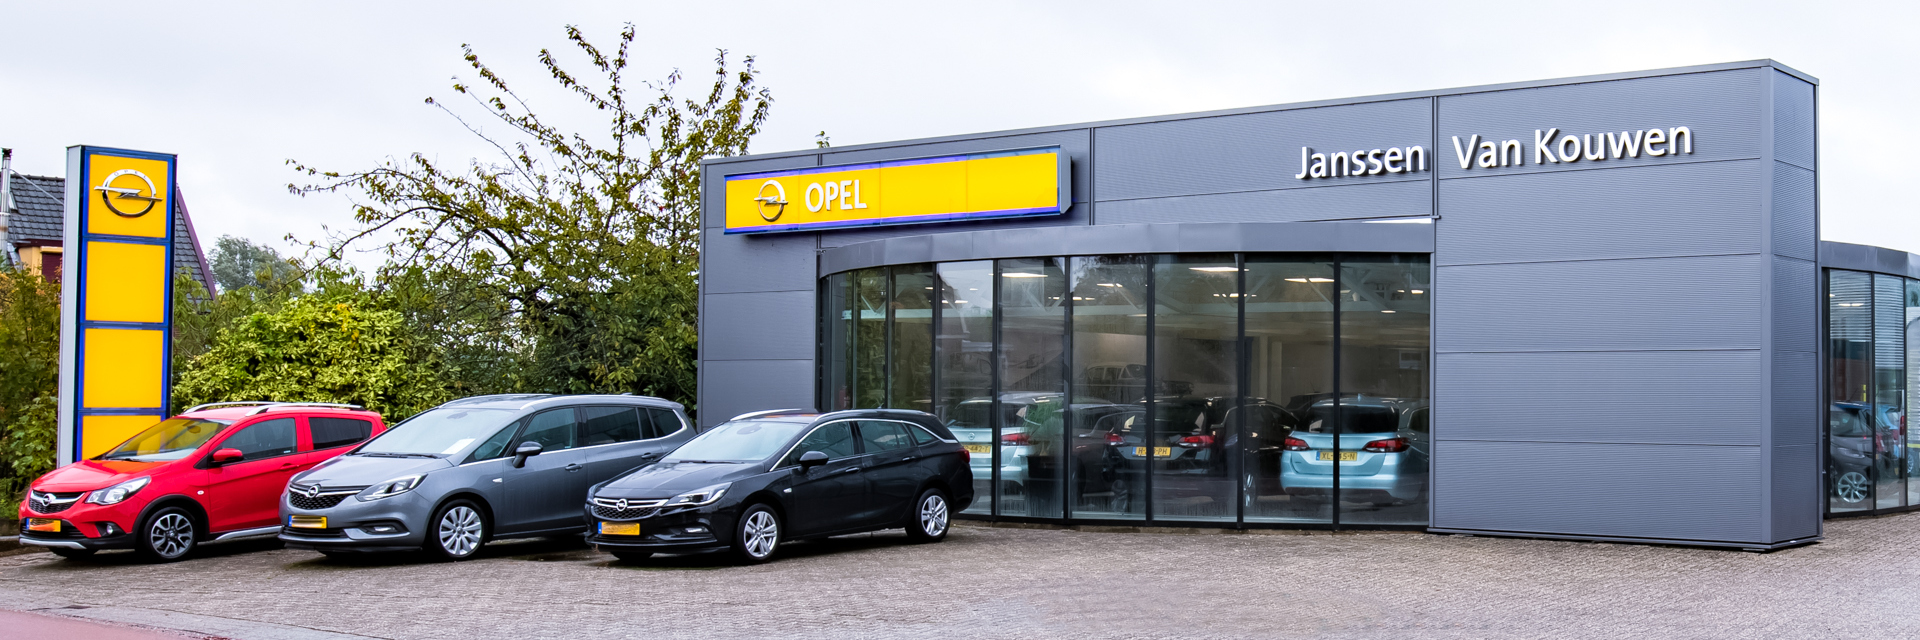 Extreem belangrijk Superioriteit dozijn Opel dealer en garage in Aalsmeer voor alle merken | Janssen Van Kouwen